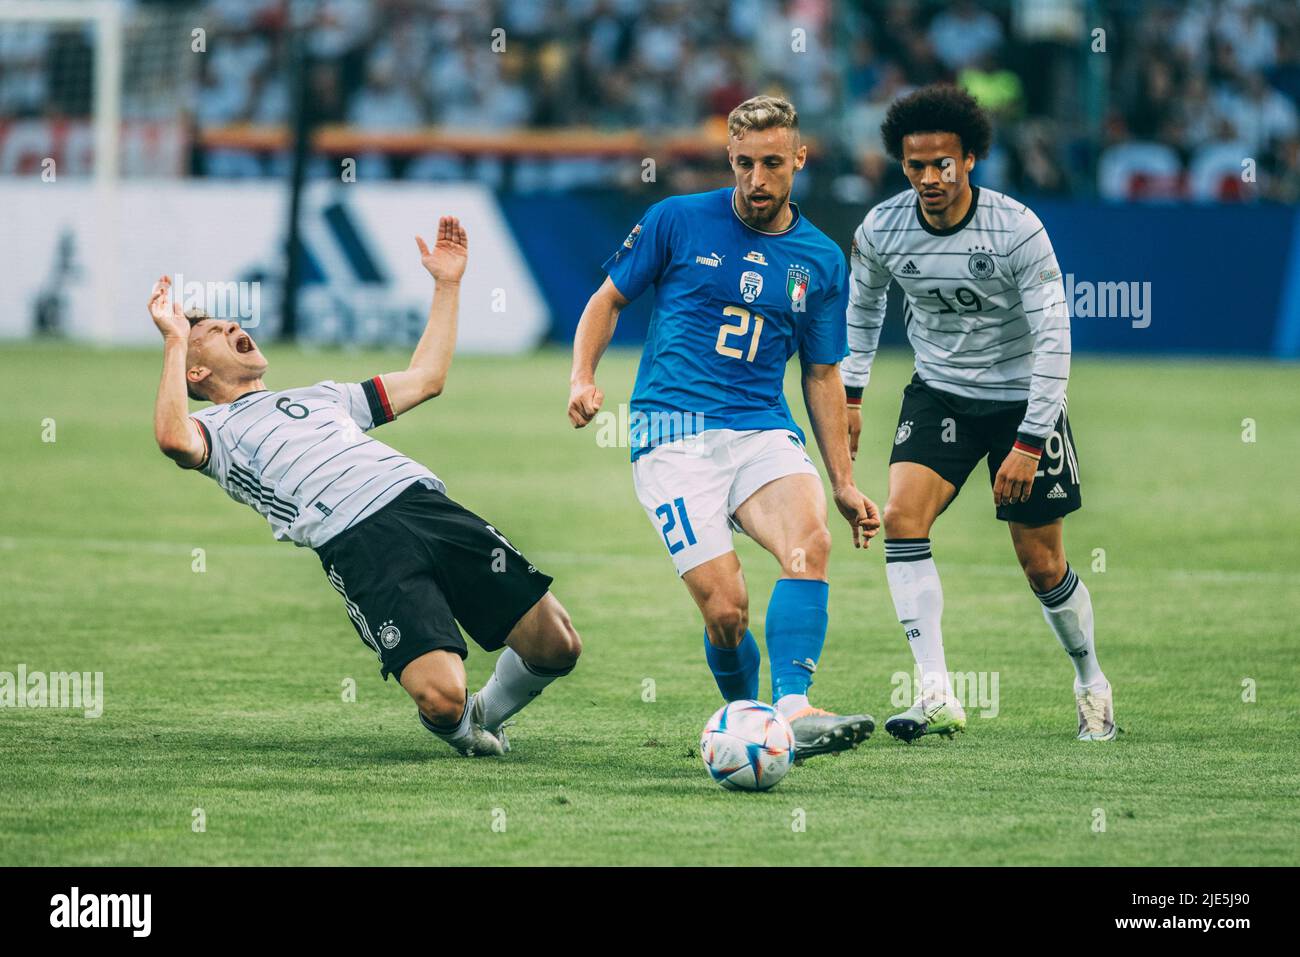 Mönchengladbach, Borussia-Park, 14.06.22: David Frattesi (R) (Italy) gegen Joshua Kimmich (L) (Germany) beim Länderspiel zwischen Deutschland vs. Ital Stock Photo